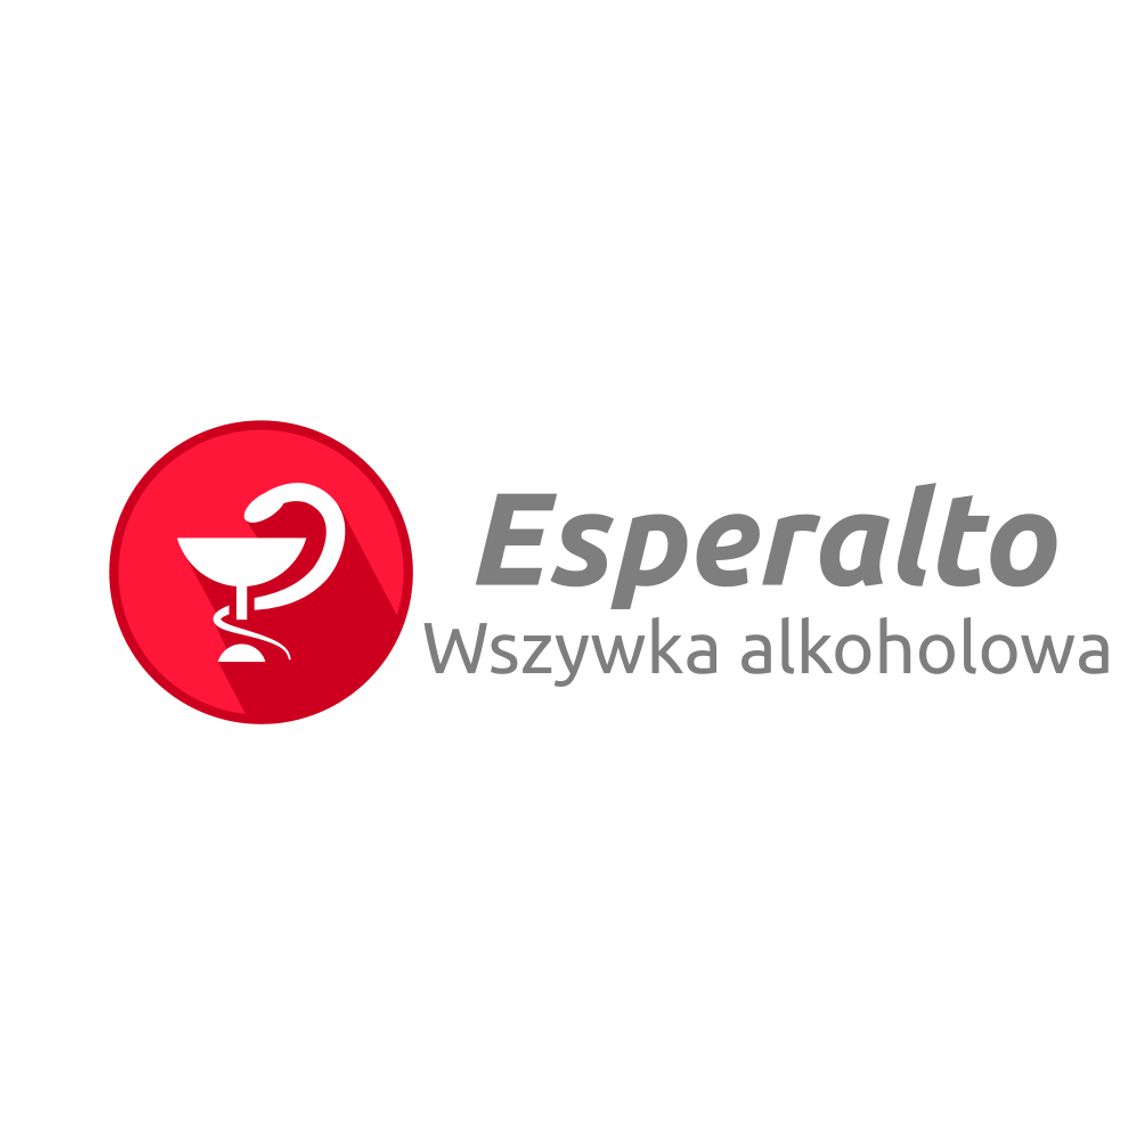 Esperalto - Wszywka alkoholowa Poznań Esperal